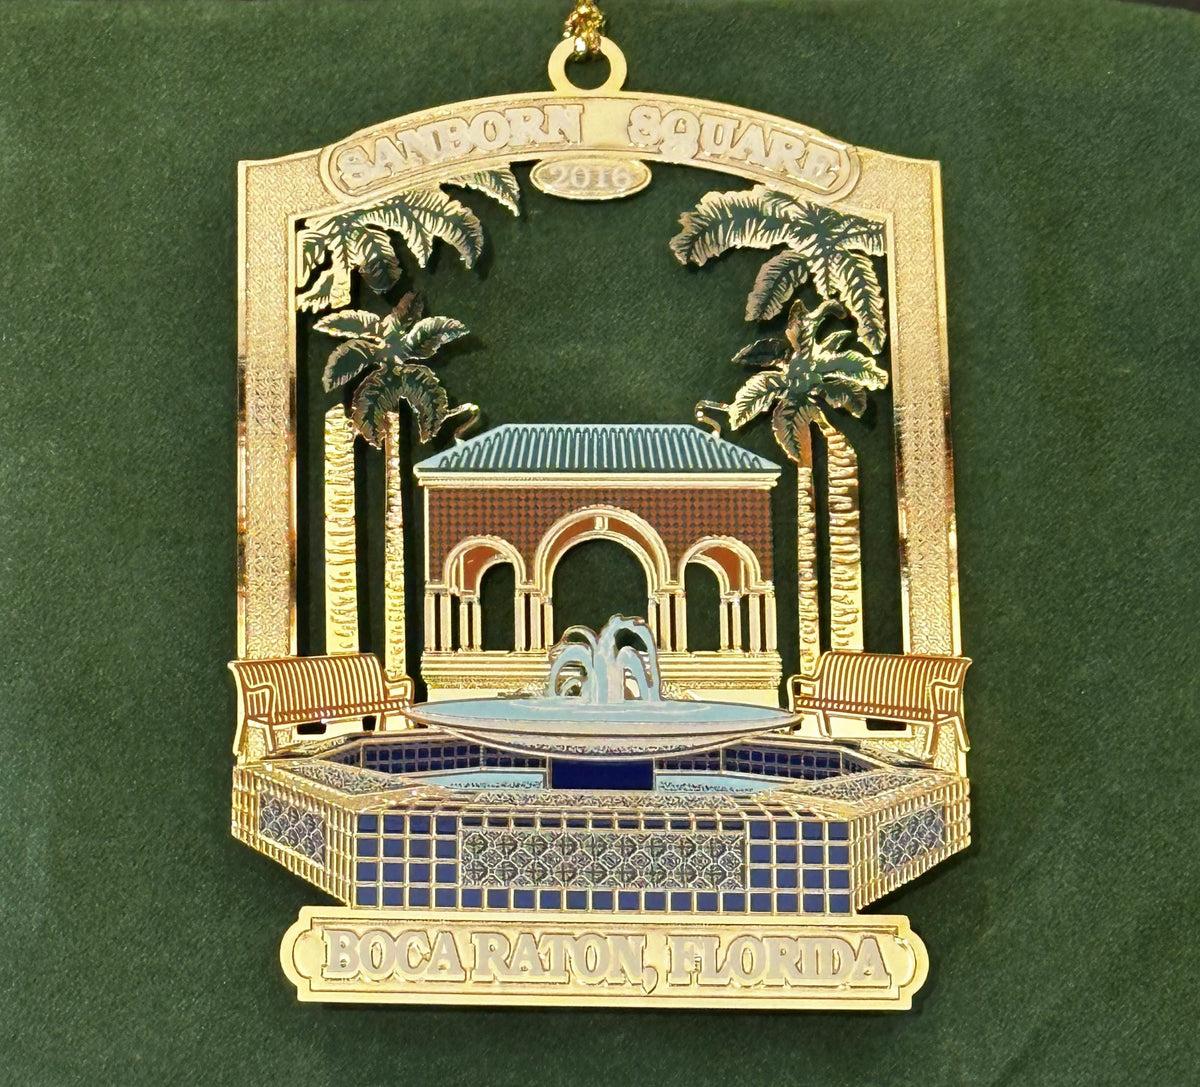 Sanborn Square Ornament